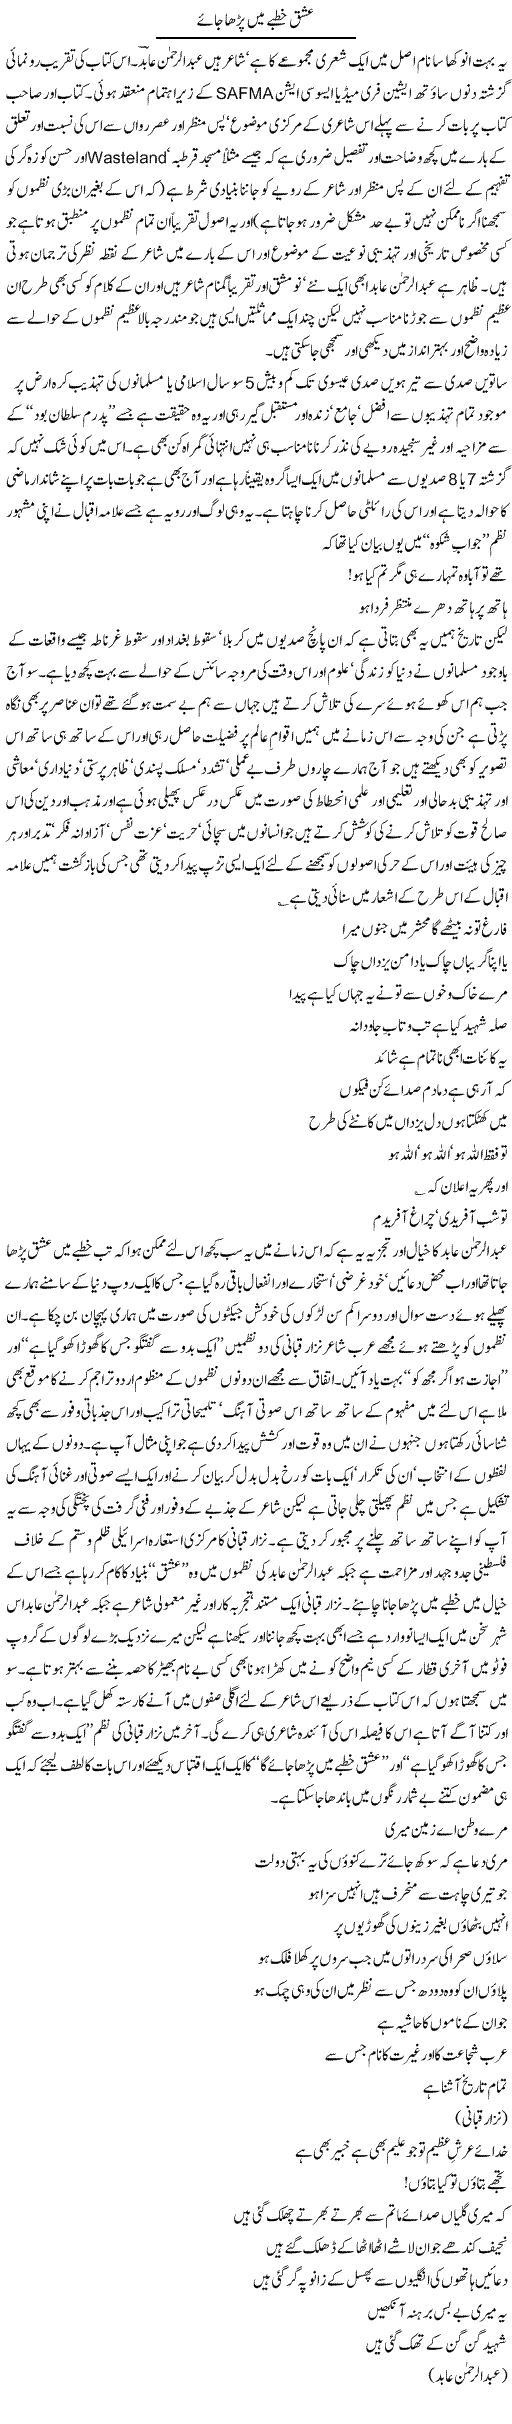 Ishq Express Column Amjad Islam 1st May 2011